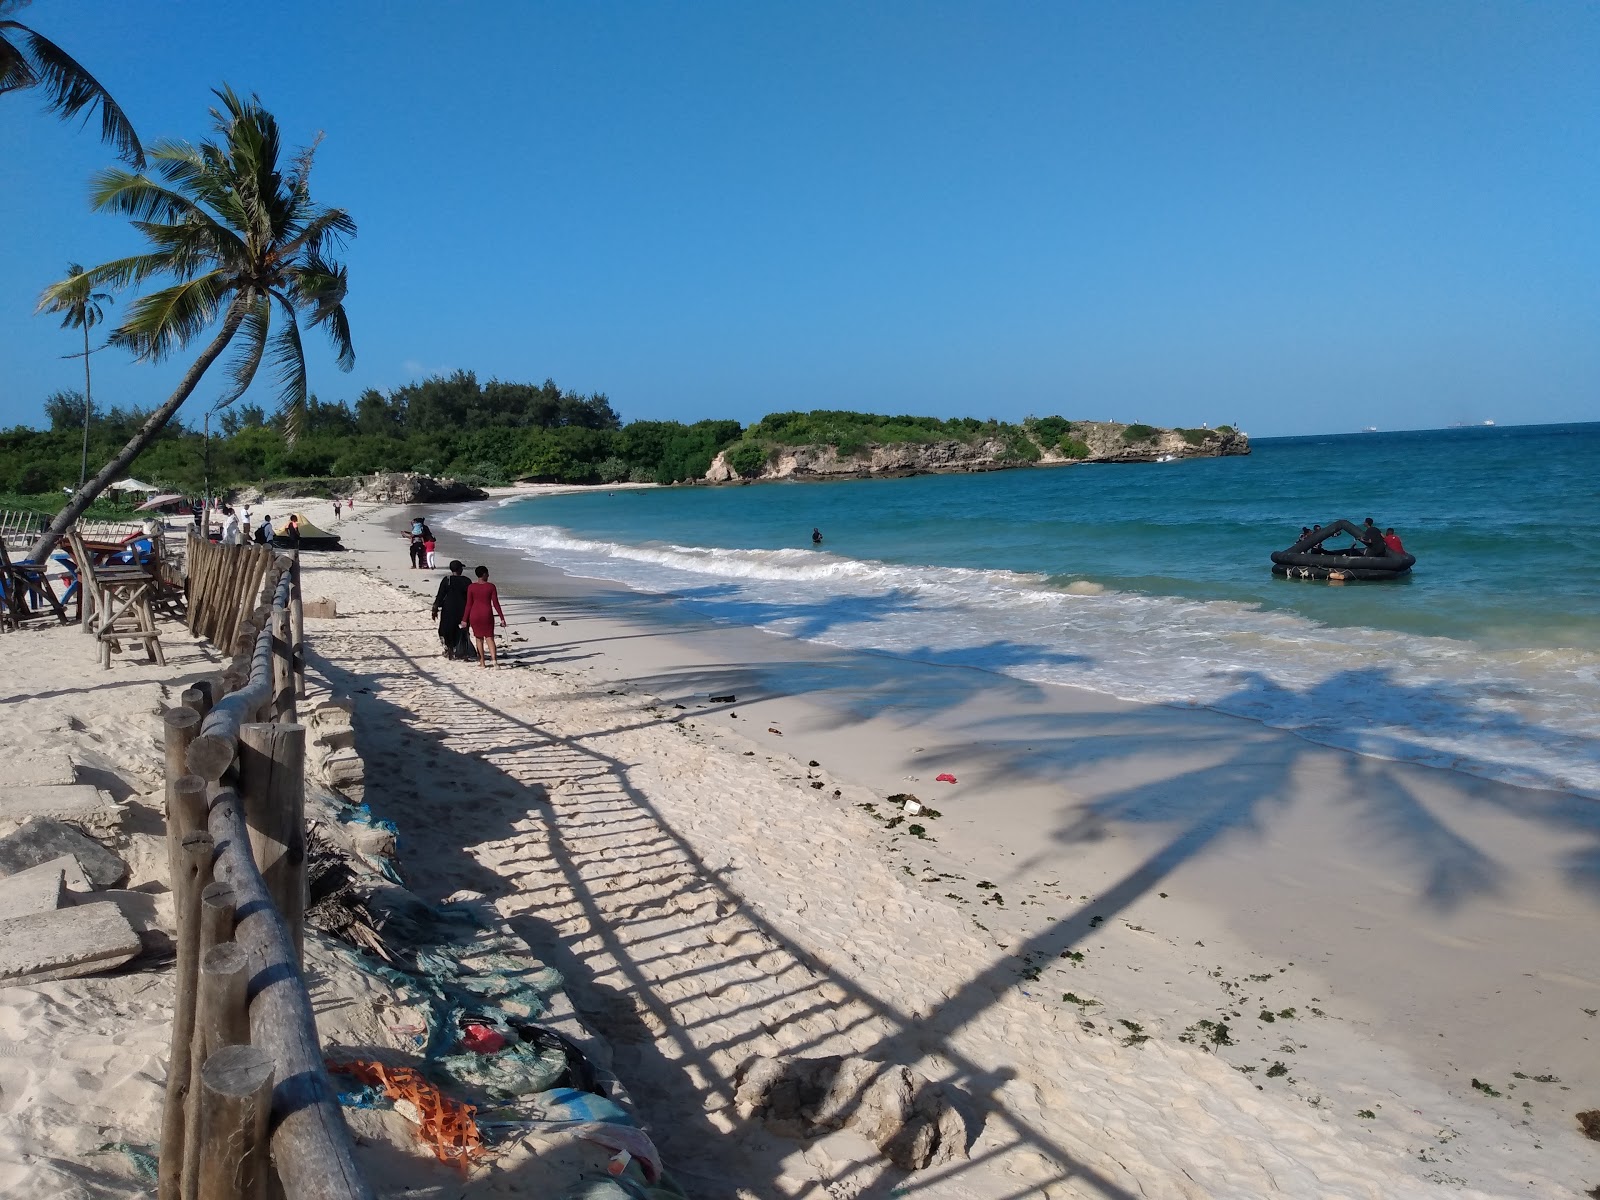 Fotografie cu Coco Beach - locul popular printre cunoscătorii de relaxare